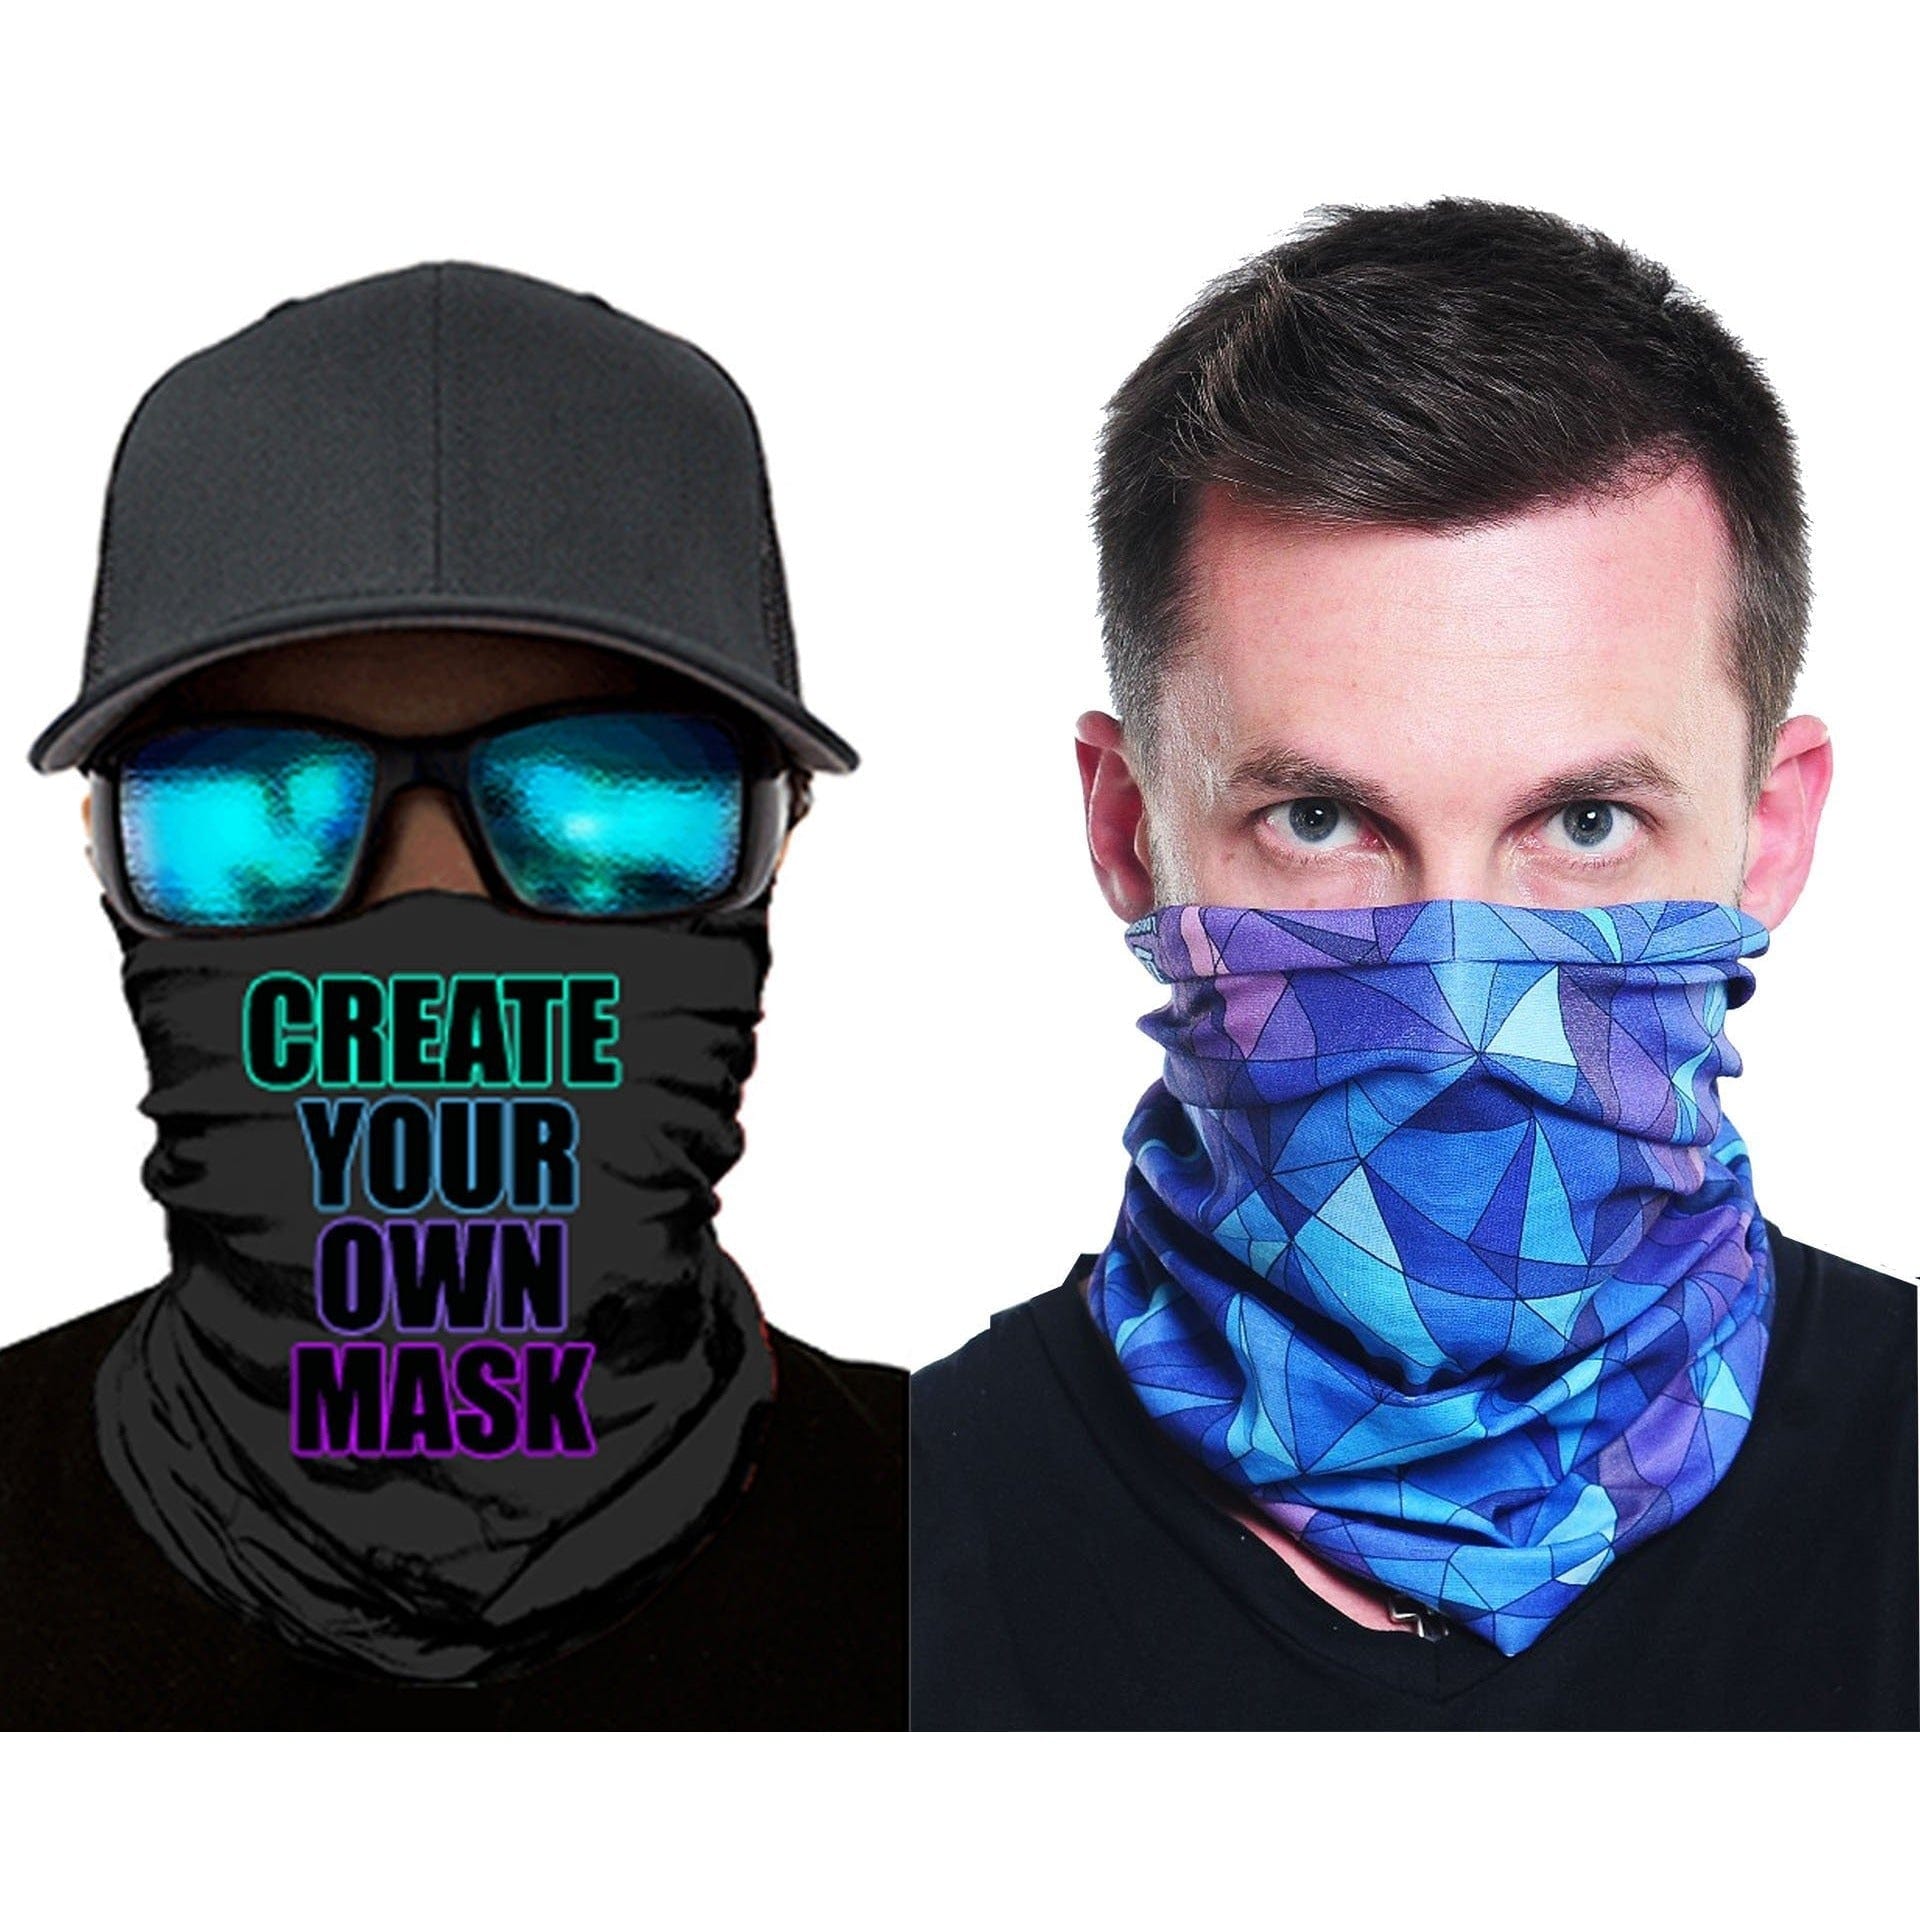 http://festflags.com/cdn/shop/files/fest-flags-mask-25-custom-masks-custom-masks-atv-festival-rave-hunting-fishing-snowboarding-30521223643206.jpg?v=1703704544